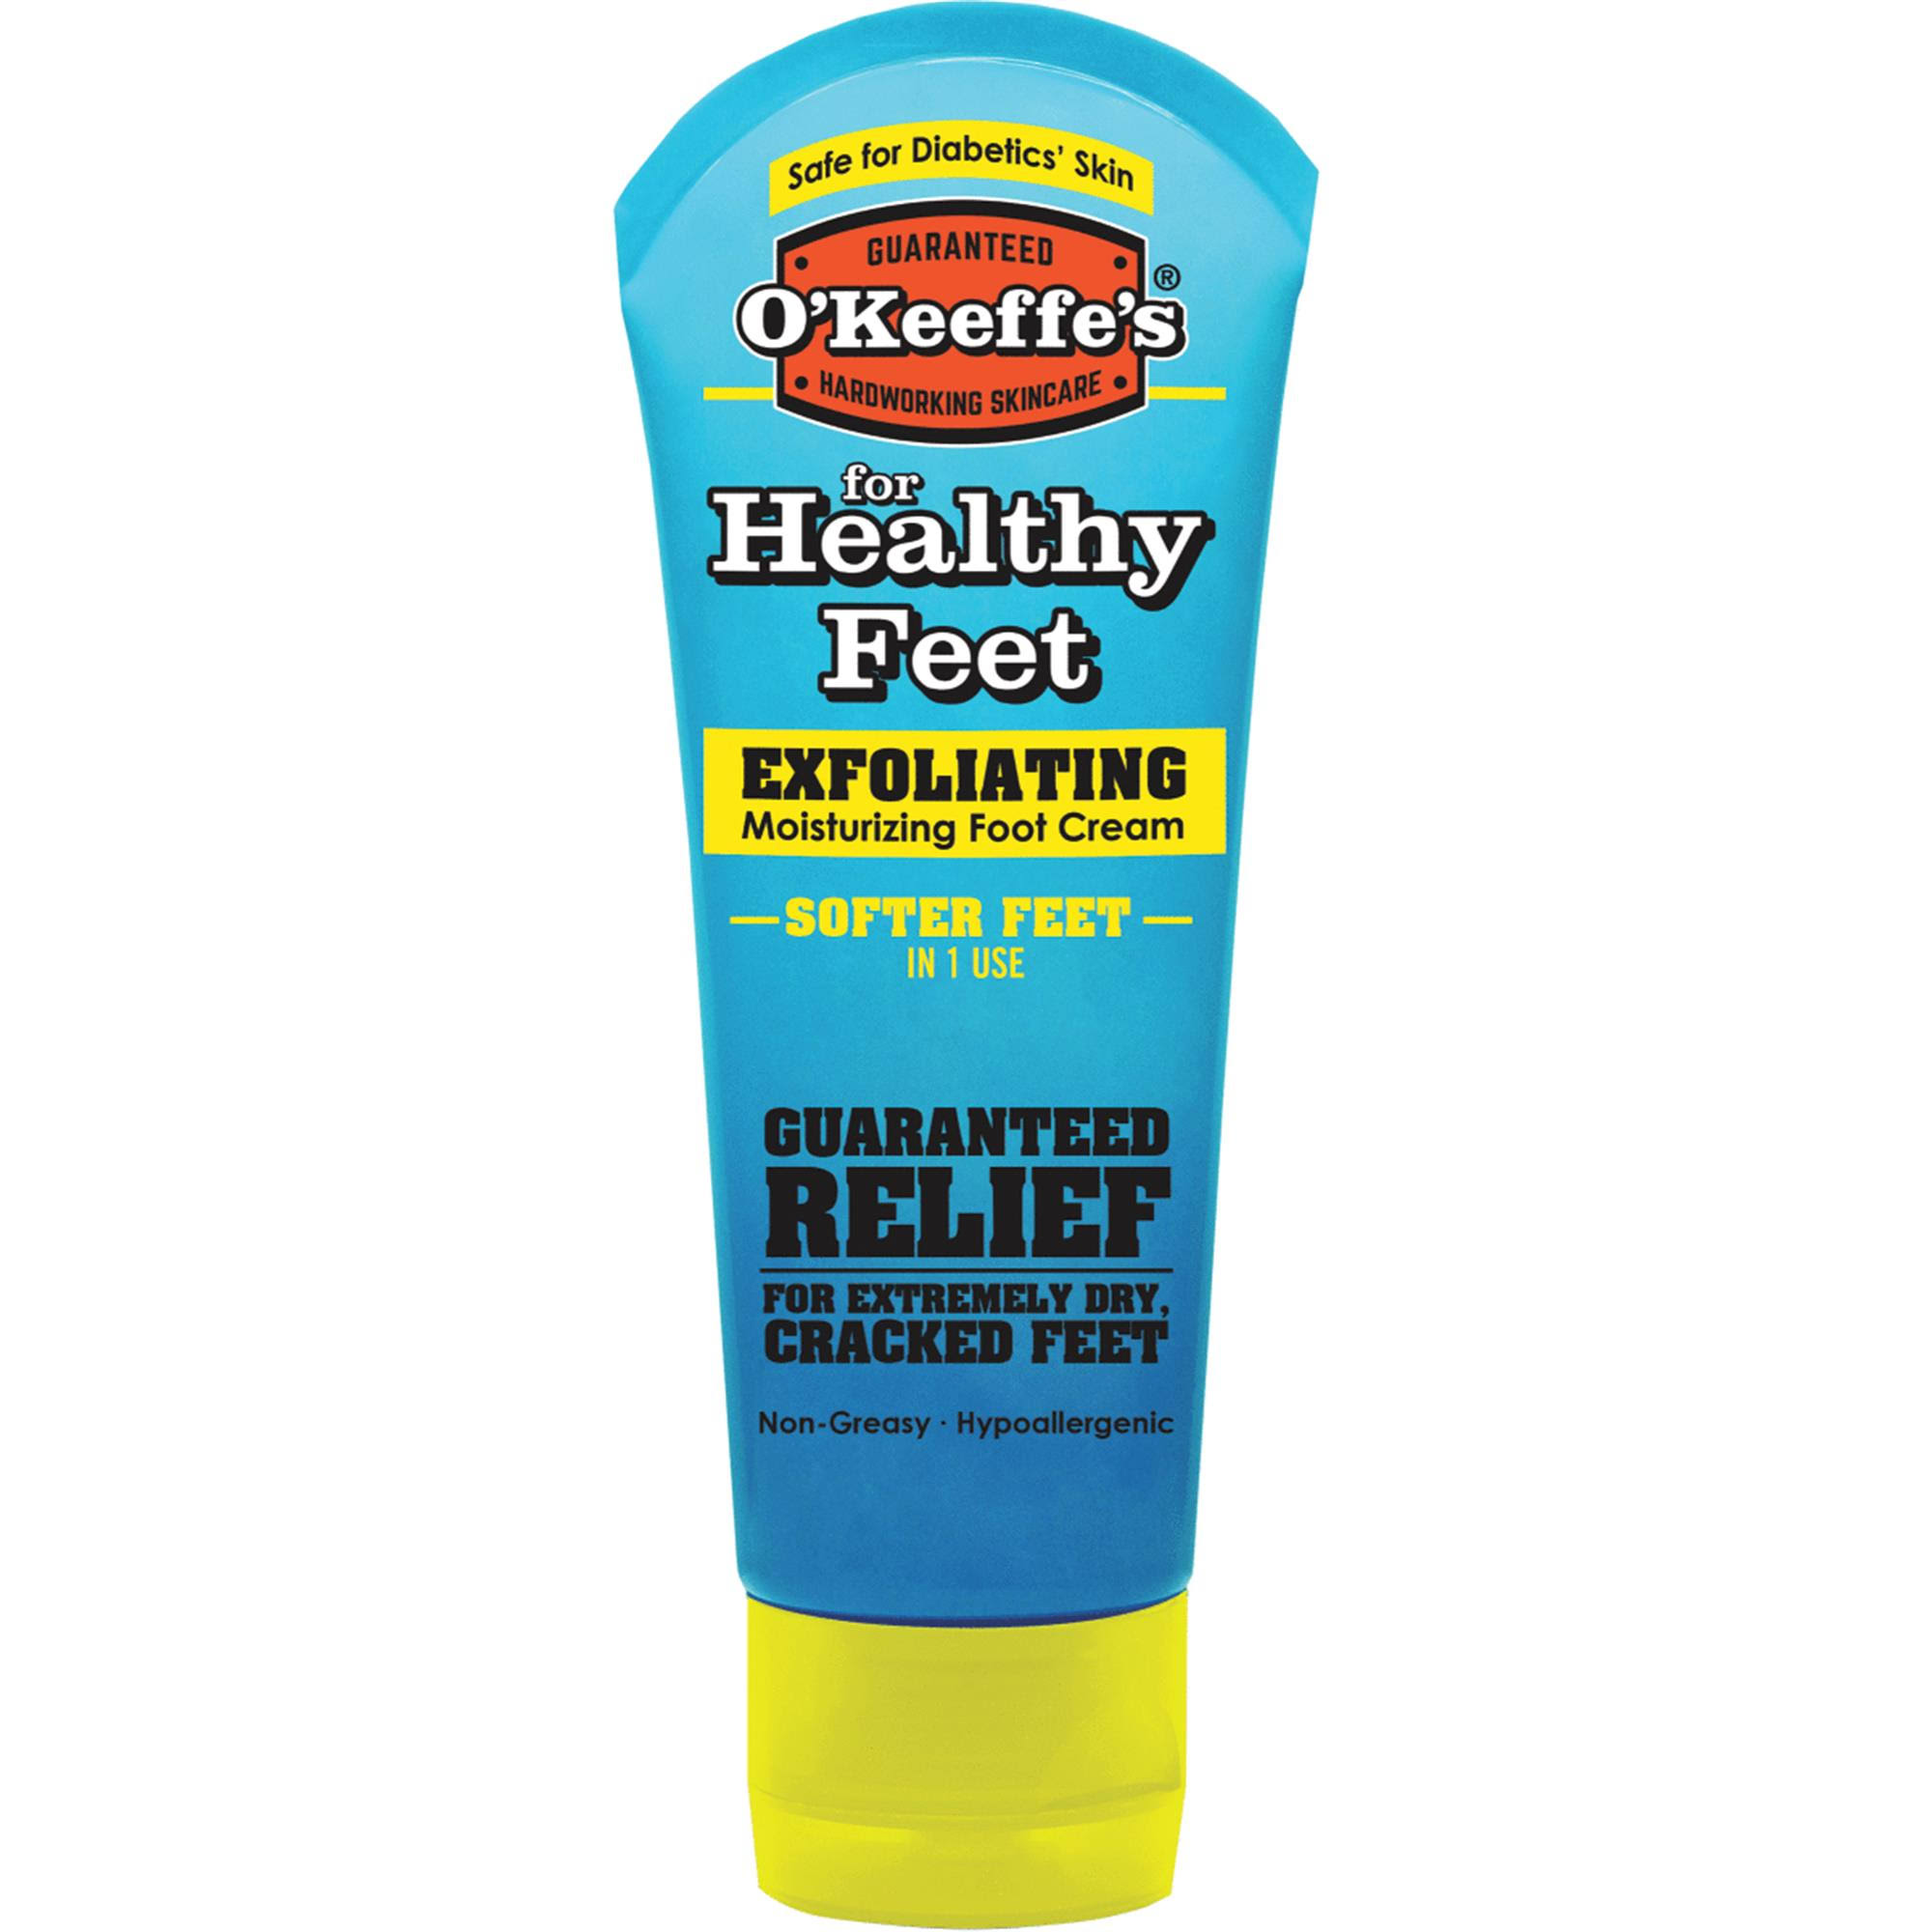 O'keeffes Healthy Feet Exfoliating Foot Cream - 3oz